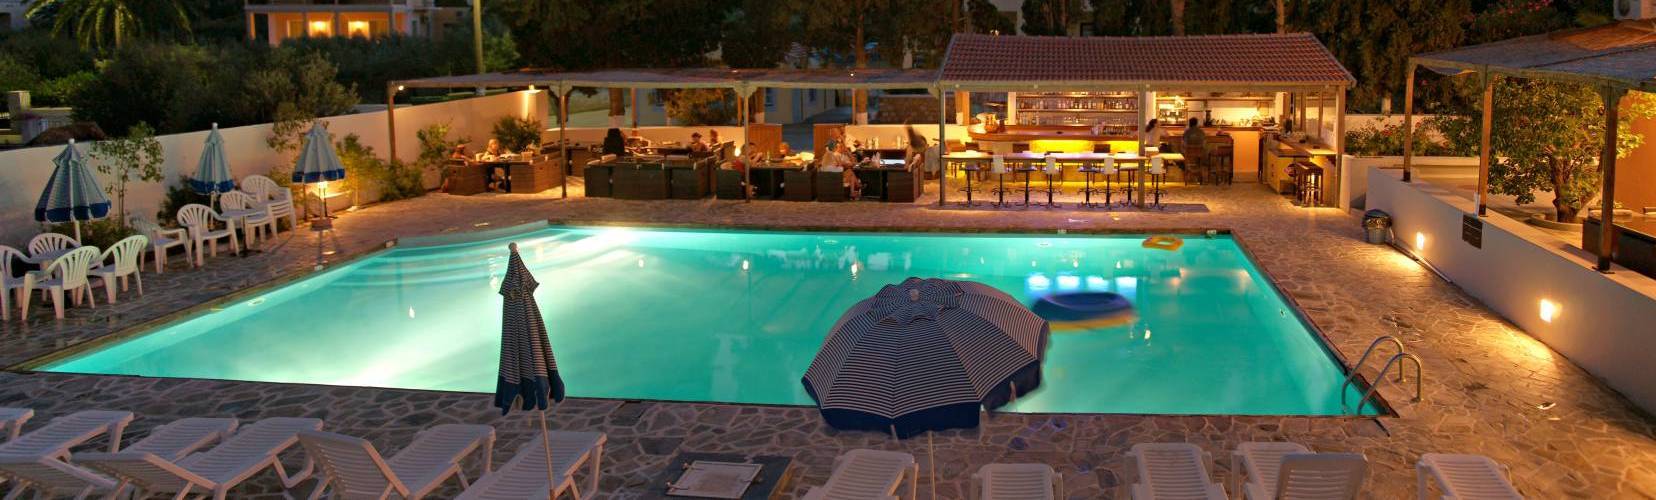 Hotel ELIES pool